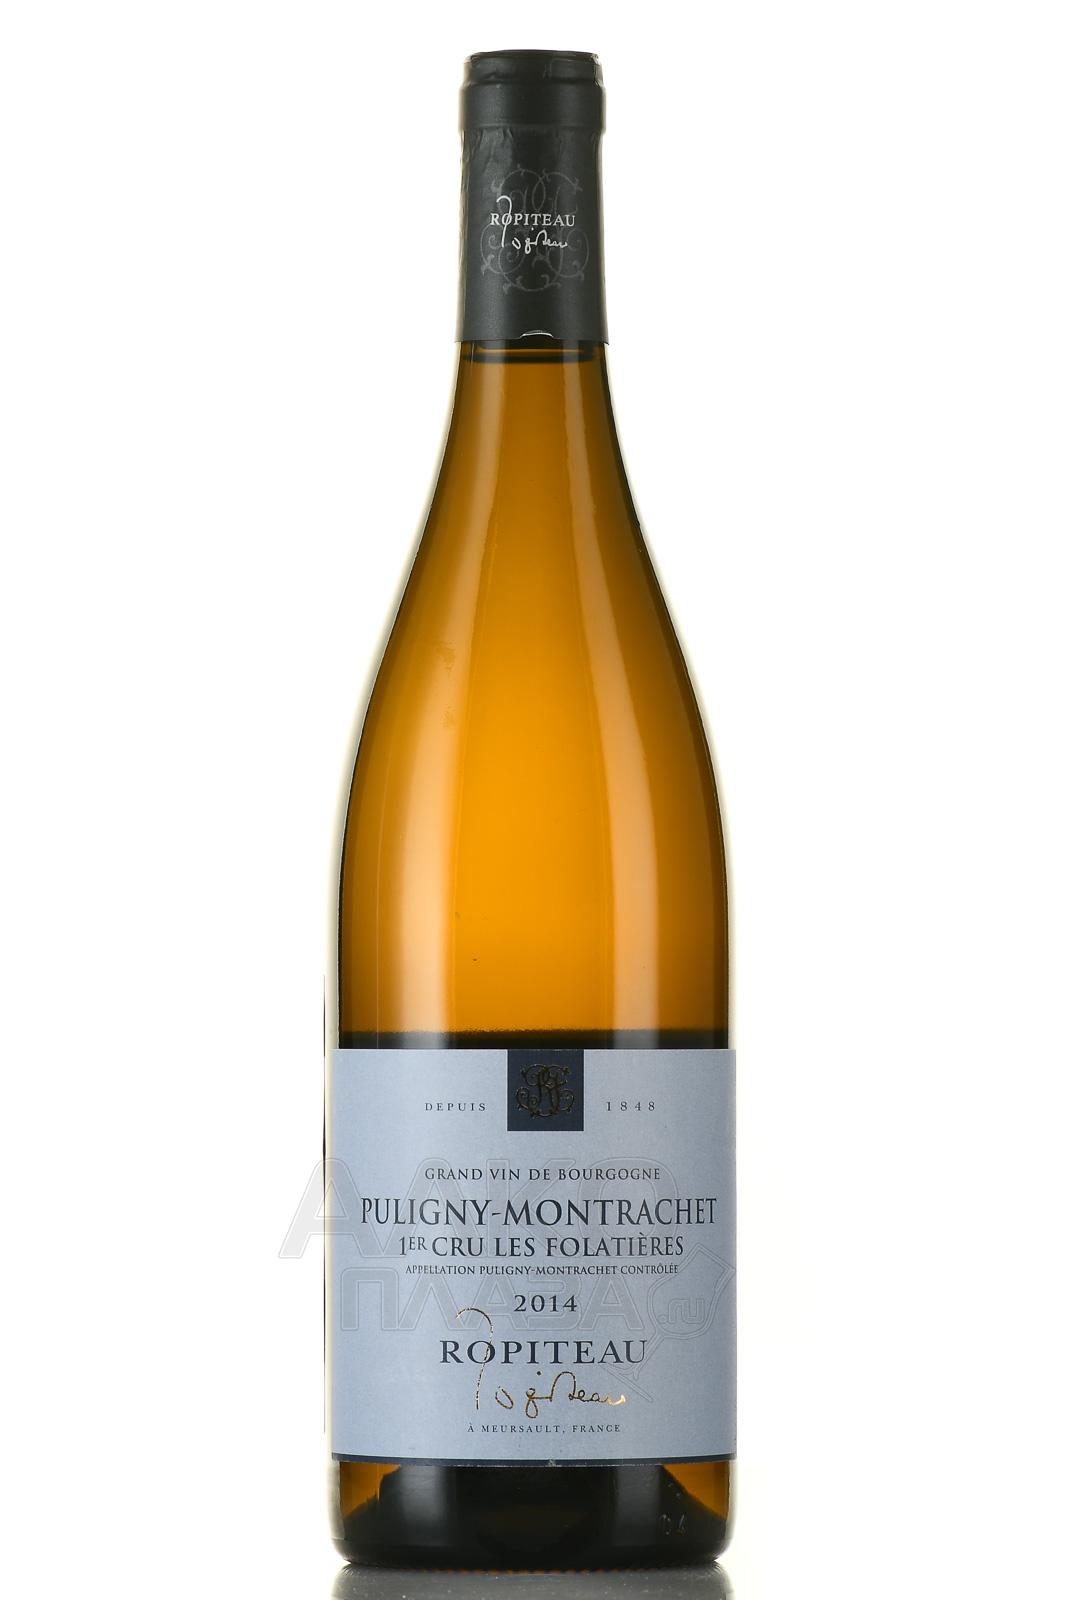 Ropiteau Puligny-Montrachet 1er Cru Les Folatieres АОС - вино Ропито Пюлини-Монрашэ Ле Фолатьер Премьер Крю АОС 0.75 л белое сухое